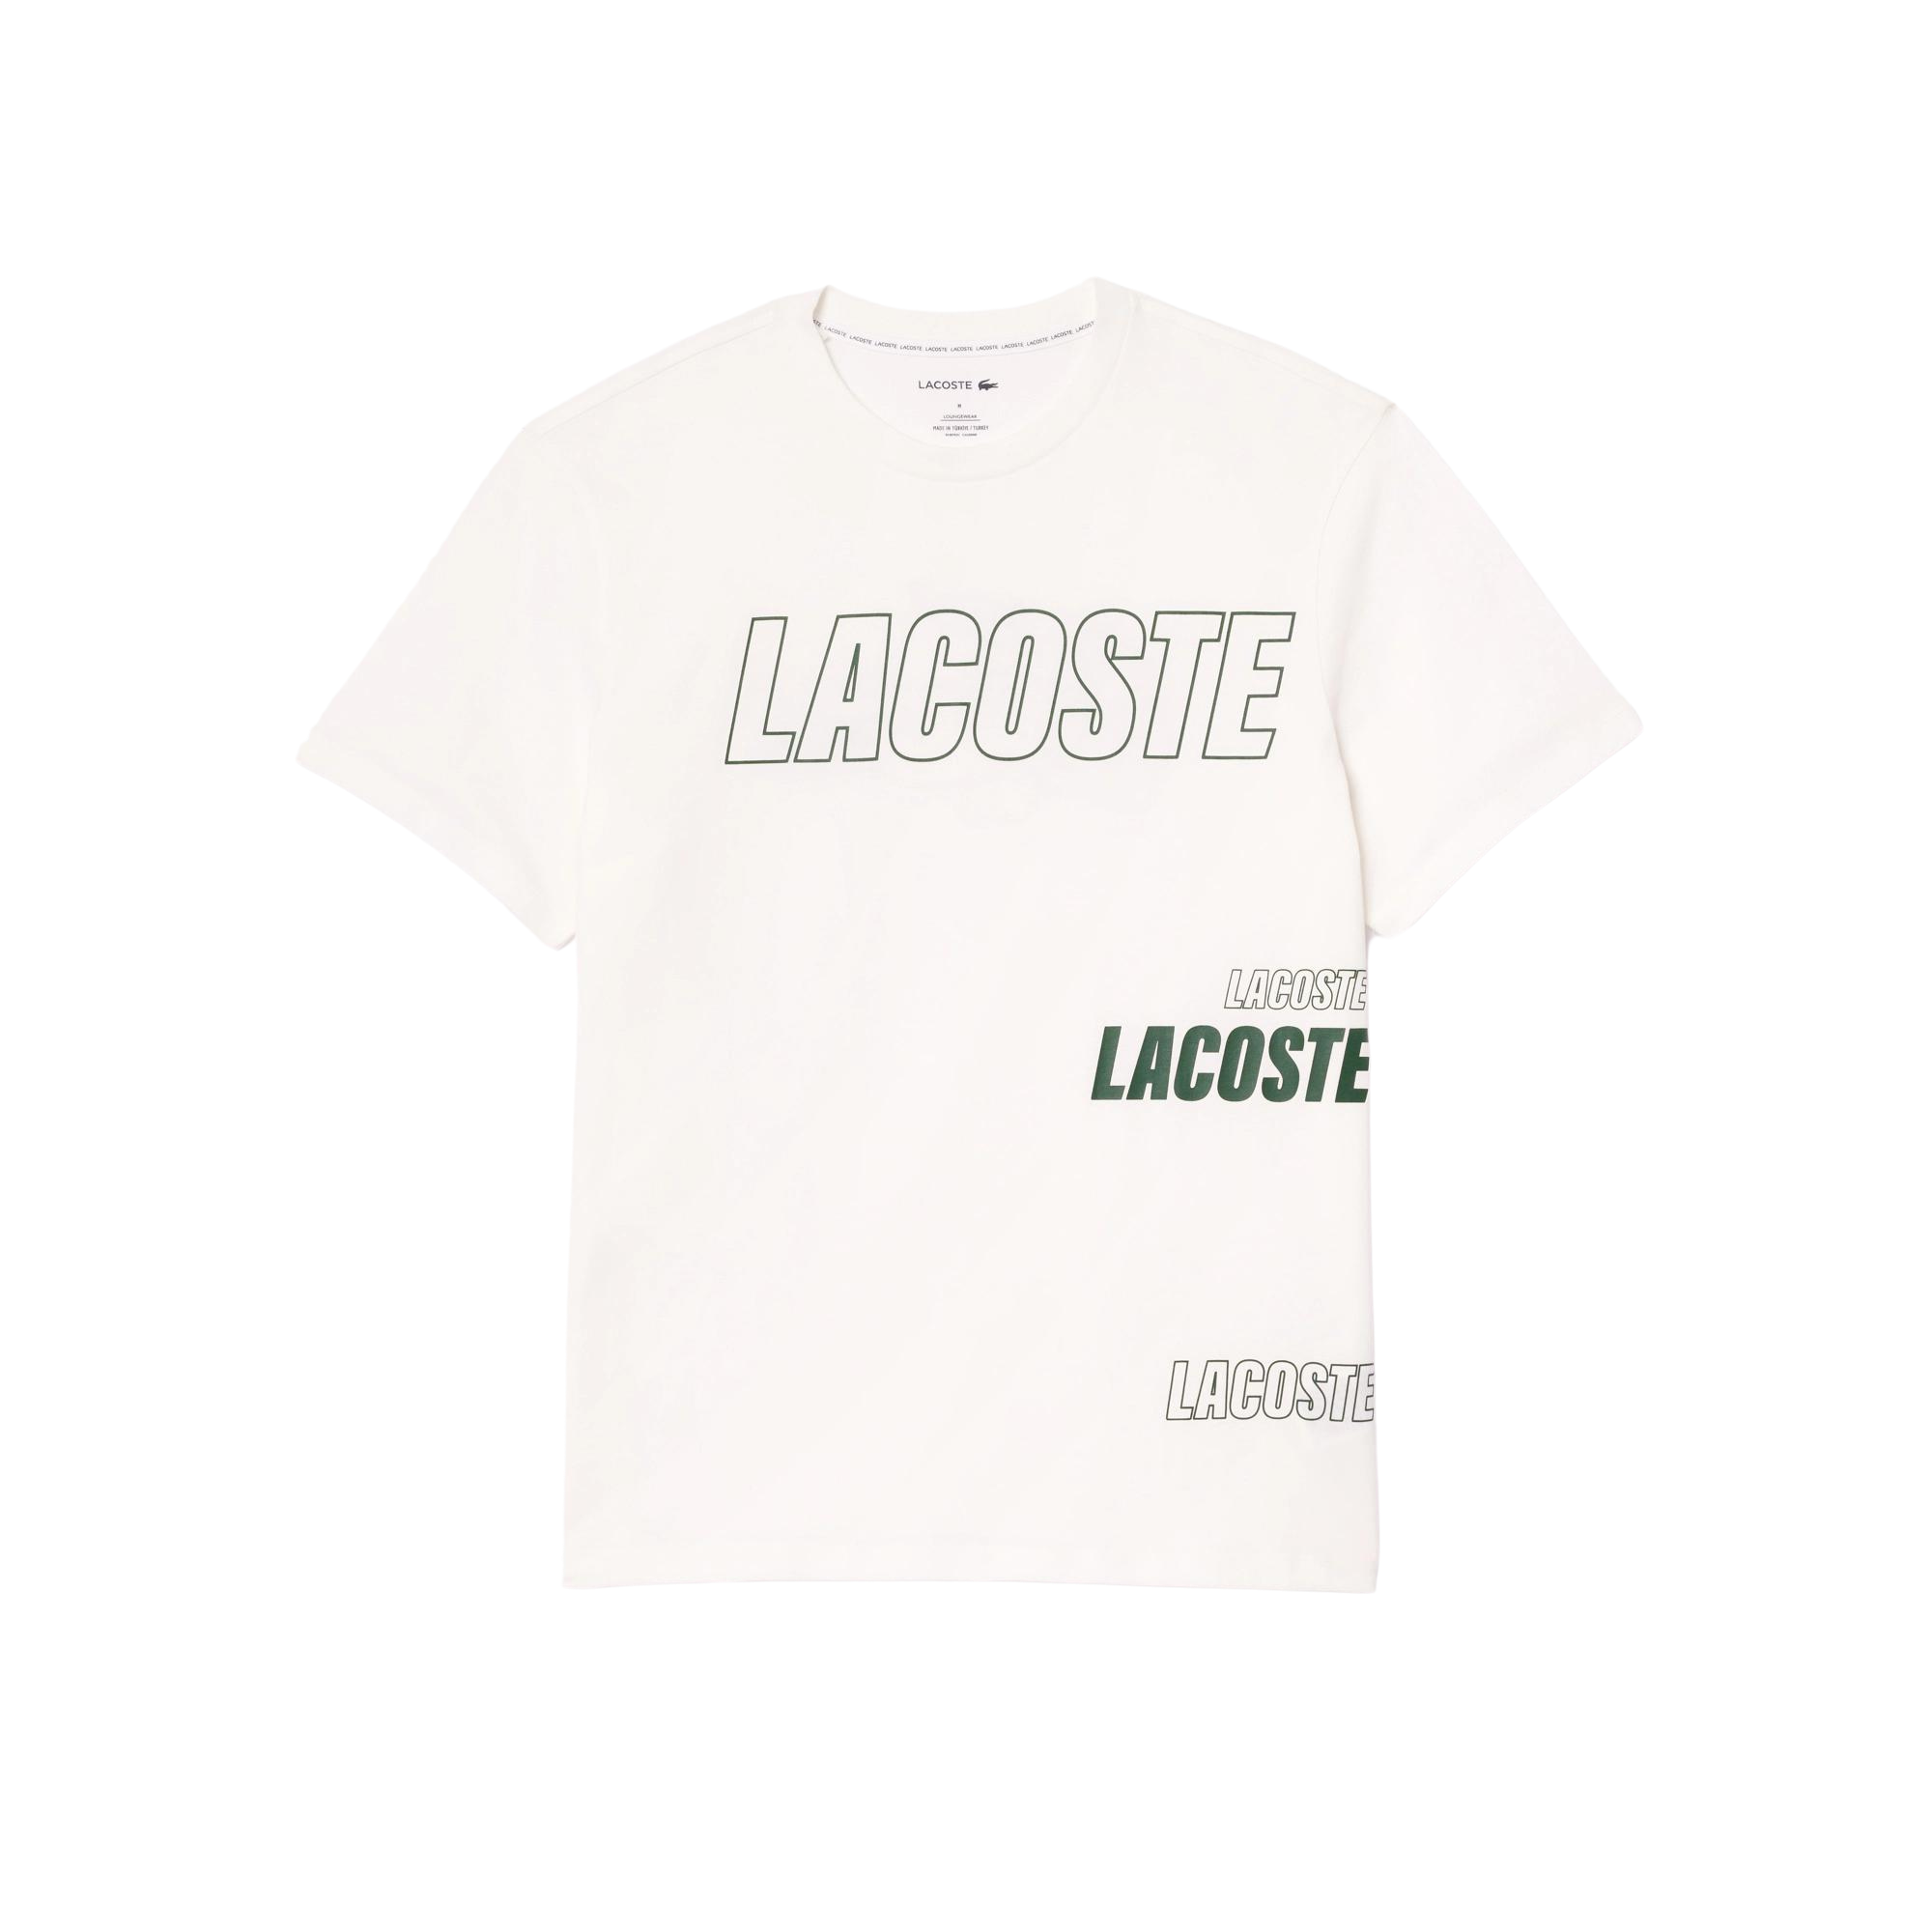 Camiseta Lacoste con Detalle de la Marca a Contraste